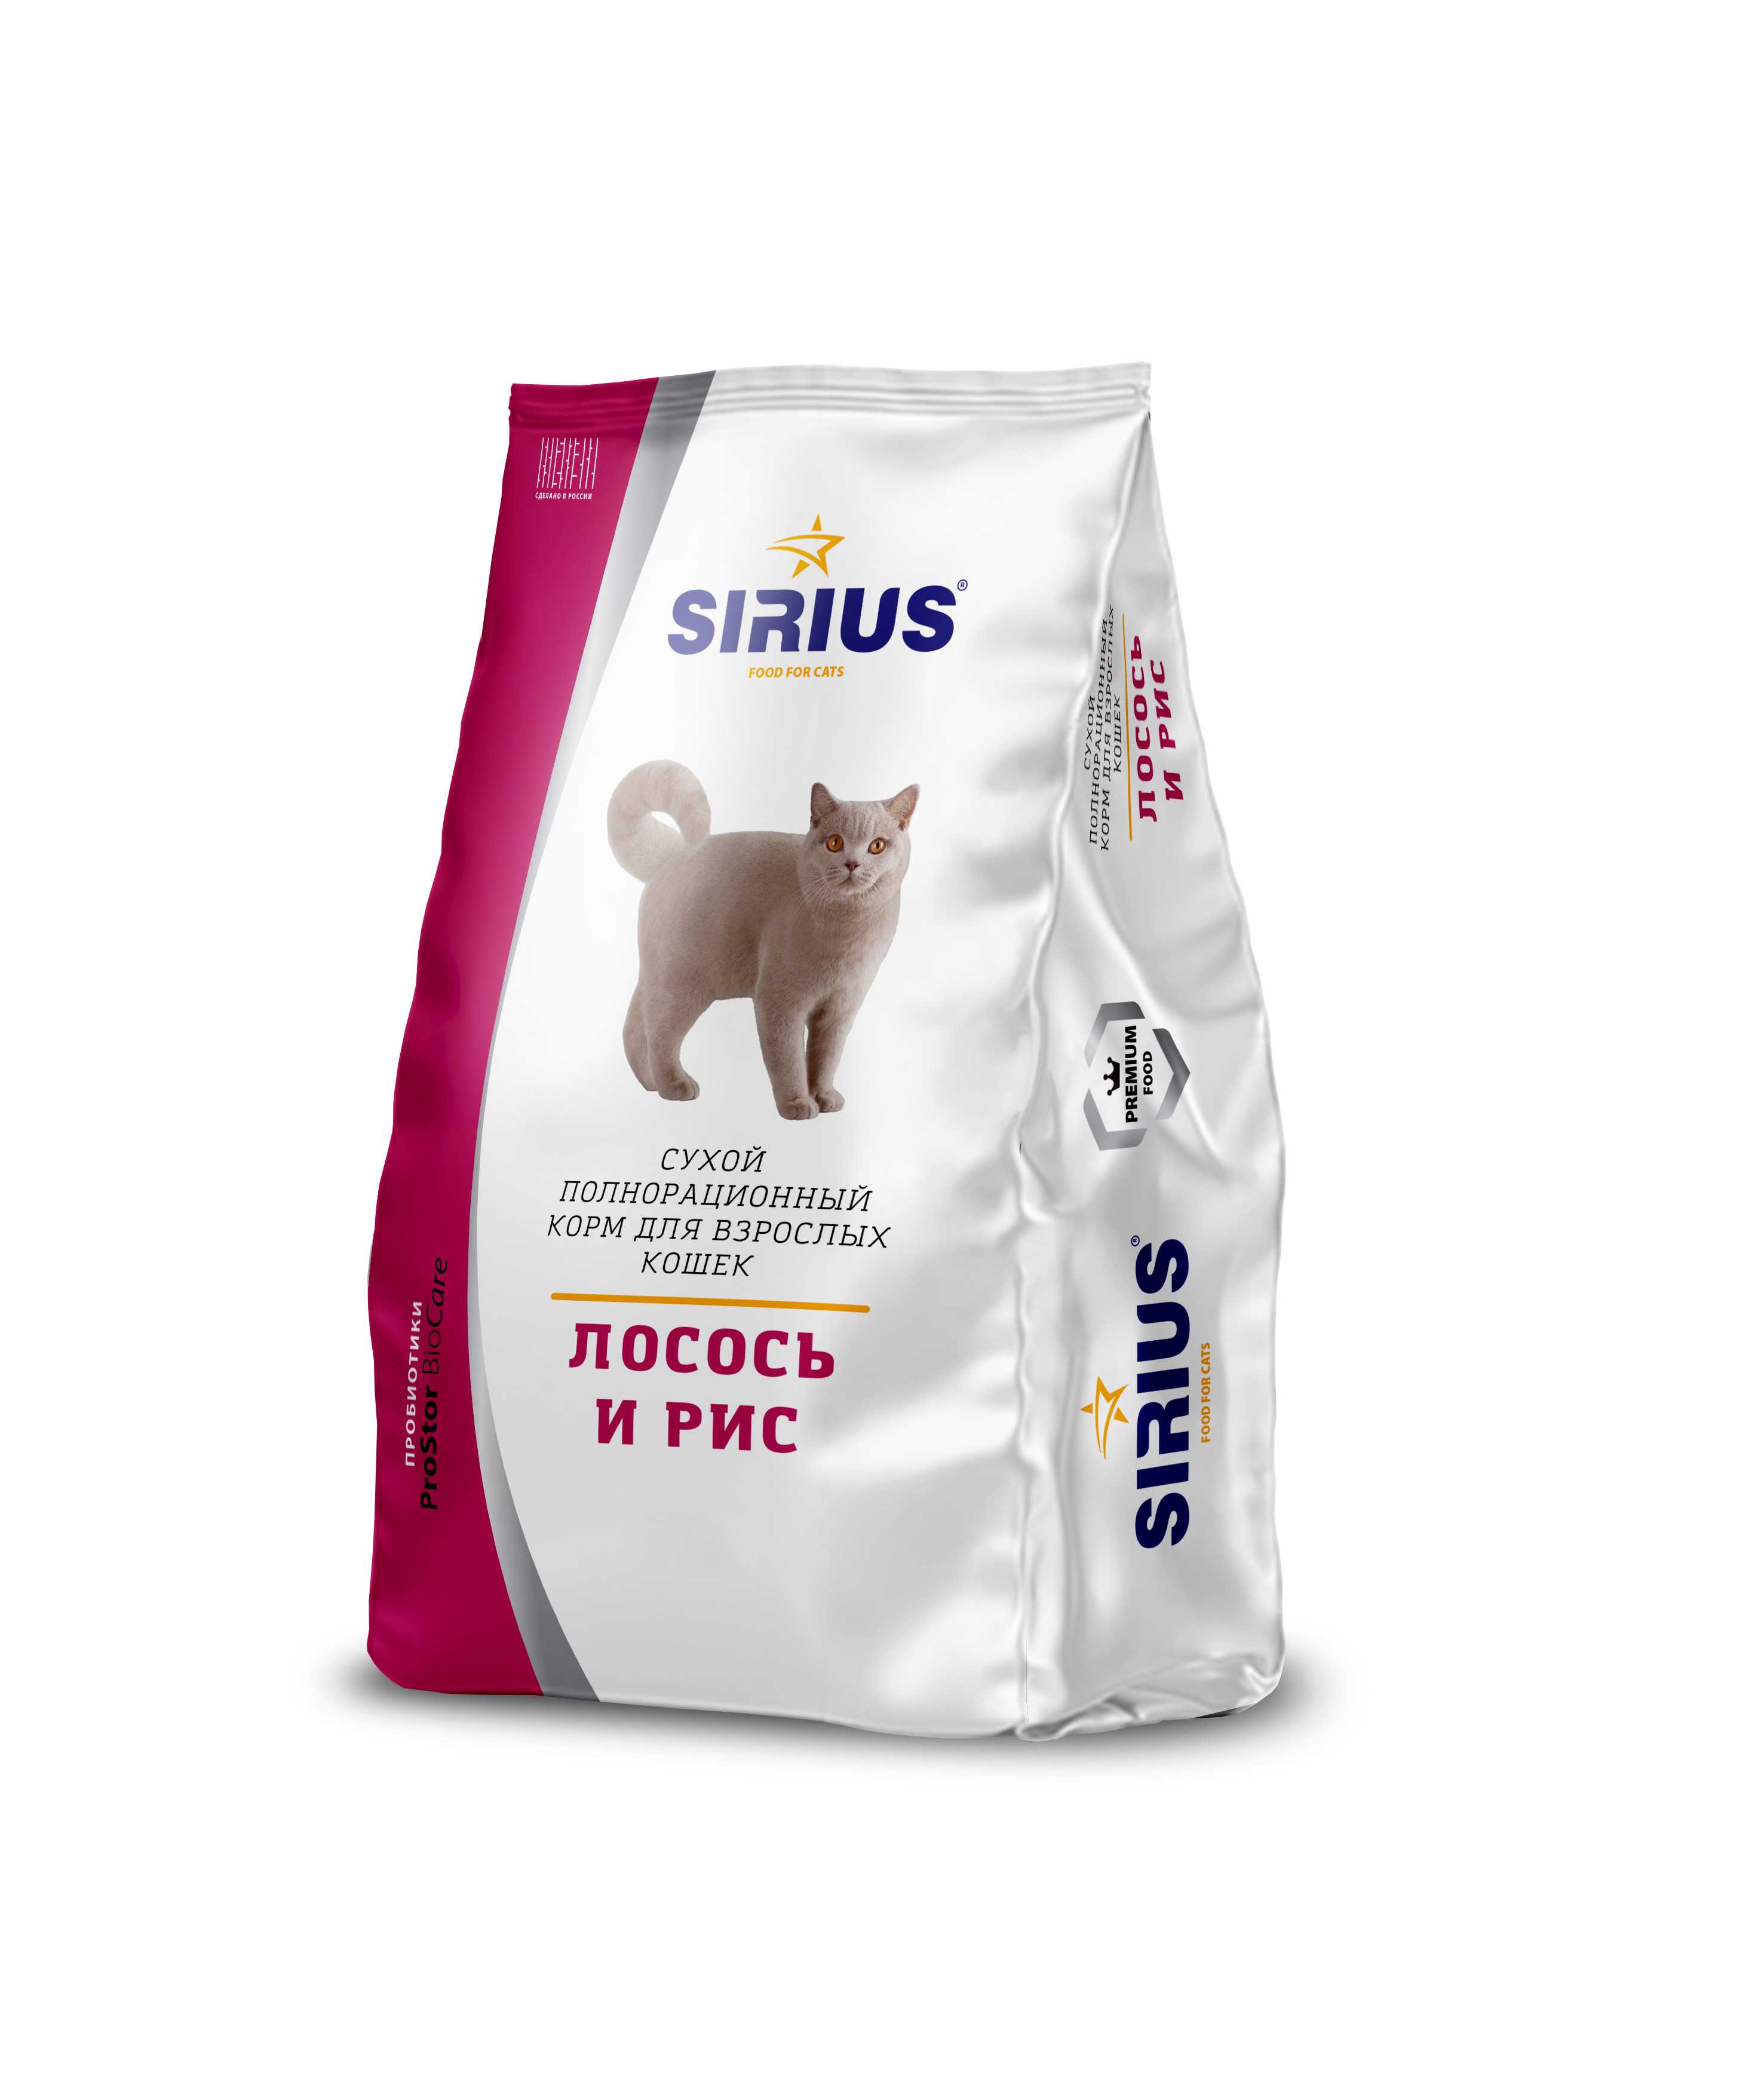 Сириус корм для кошек 10 кг. Сухой корм для кошек Sirius лосось, с рисом 400 г. Sirius корм для кошек премиум. 'Сириус сухой полнорационный корм для взрослых кошек, лосось и рис. Сириус для кошек 10 кг купить